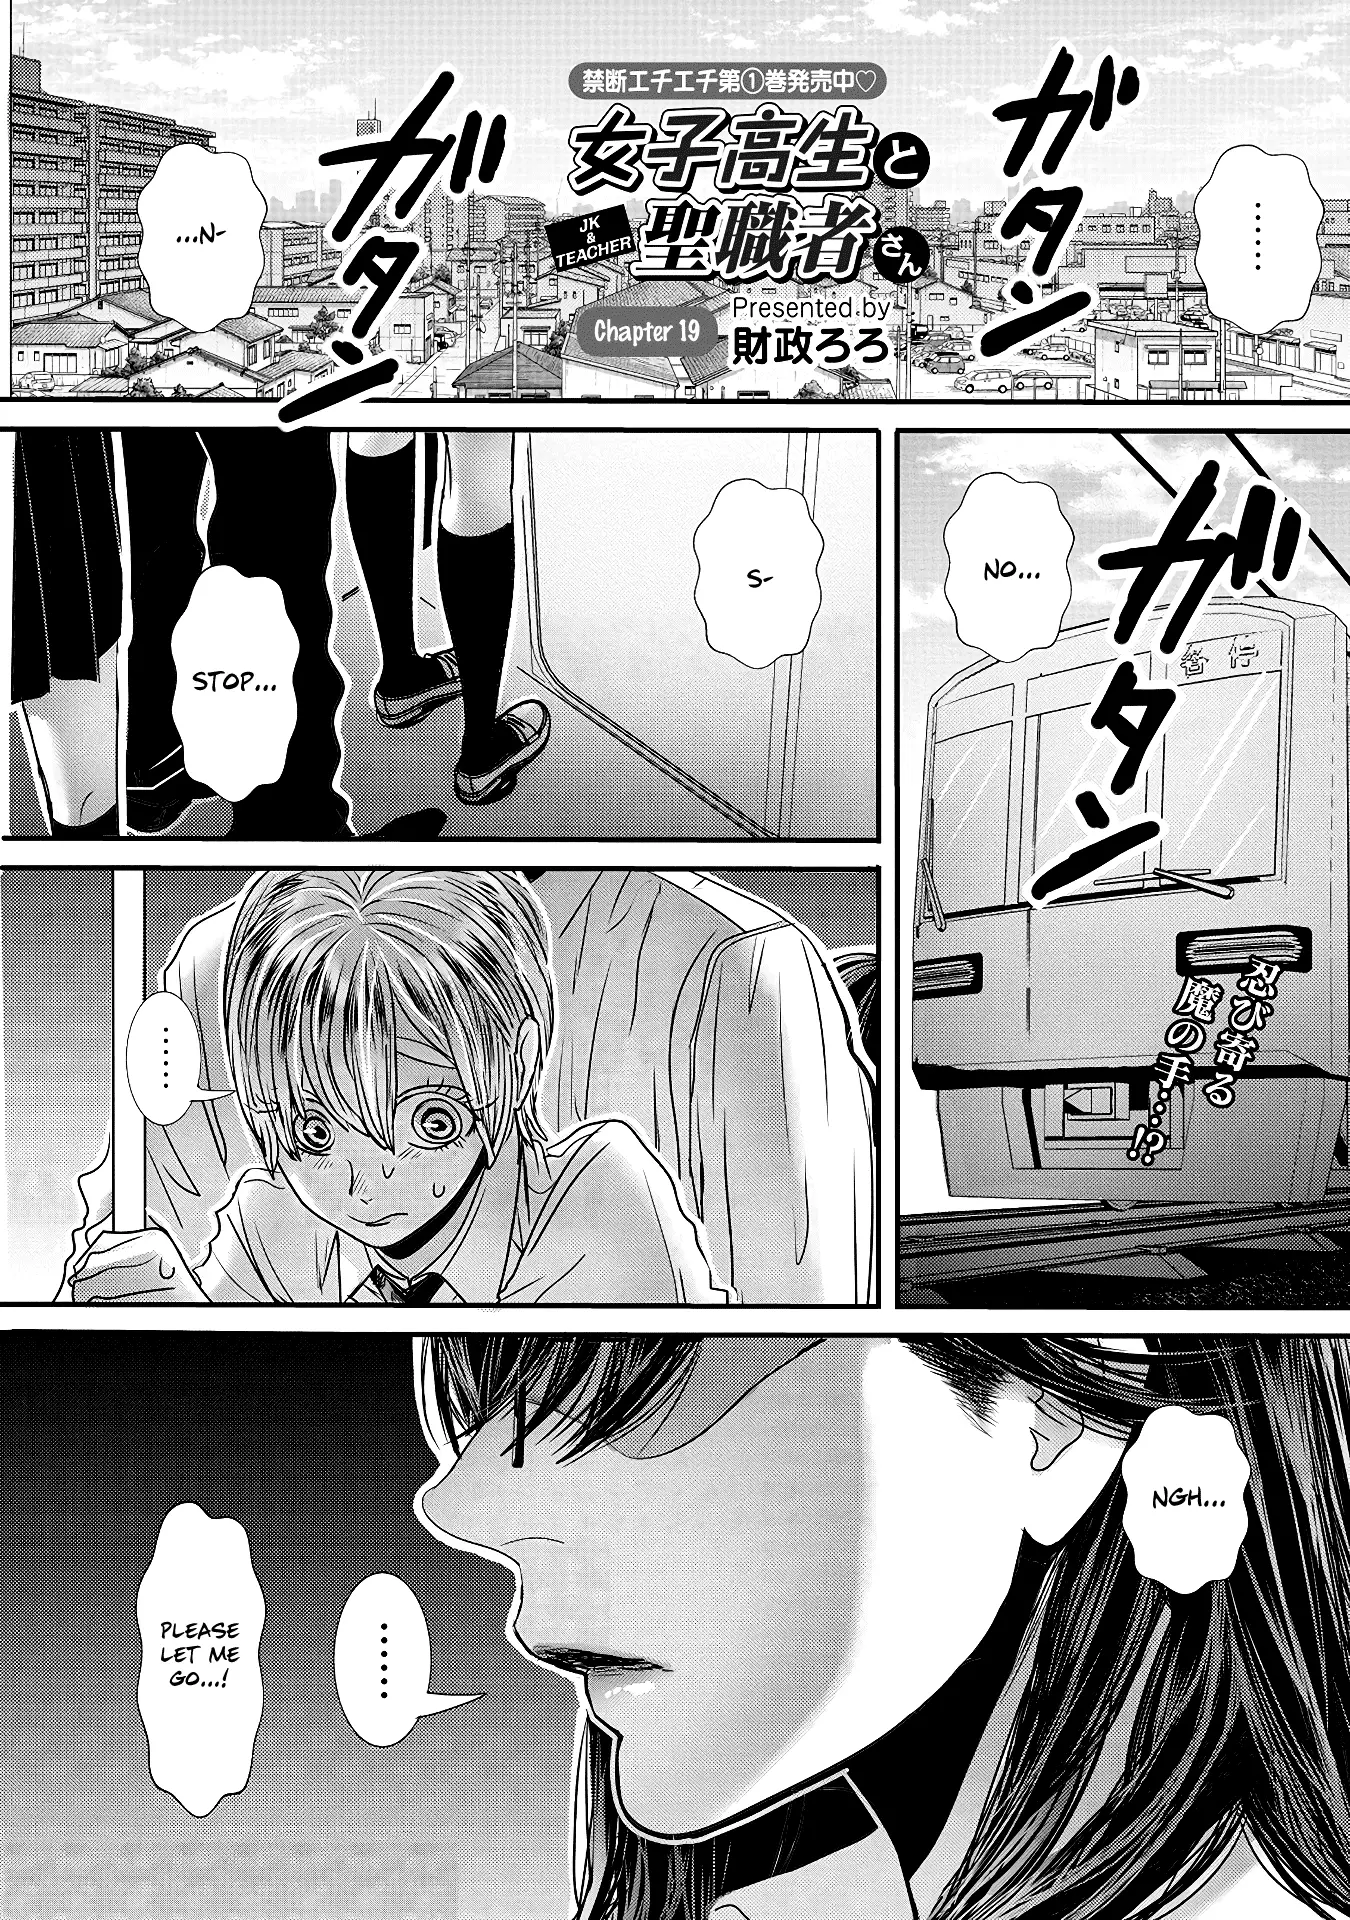 Joshikousei To Seishokusha-San - 19 page 1